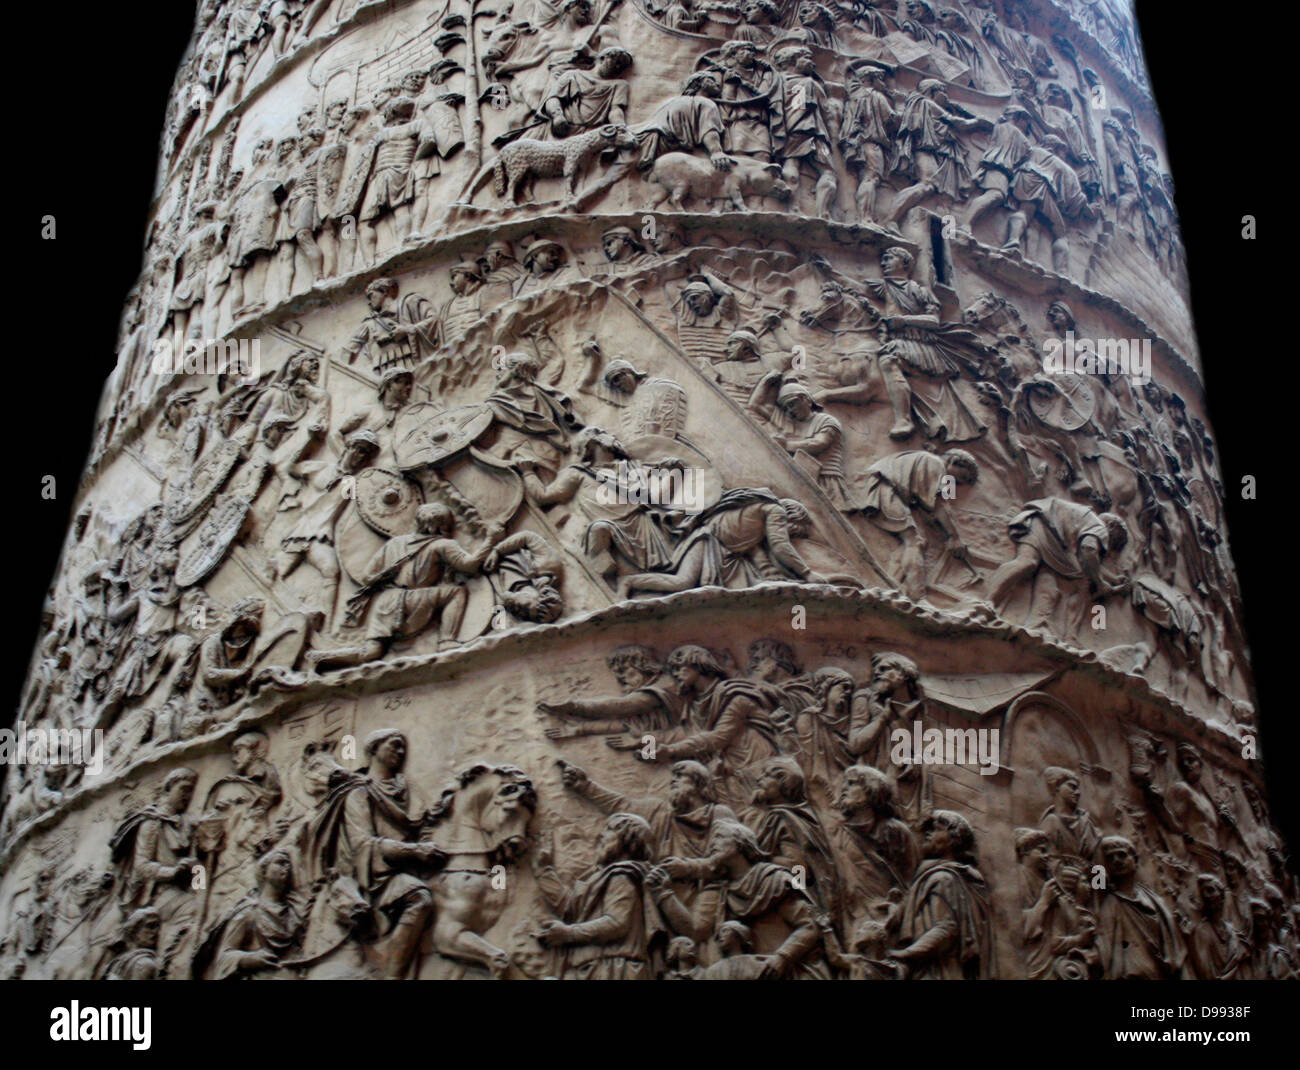 1864 reproduction effectuée à partir d'un moulage en plâtre de la colonne Trajane à Rome. La colonne a été érigée pour commémorer les campagnes de l'empereur Trajan contre les Daces sur la frontière du Danube dans AD 101-2 et 105-6 Banque D'Images